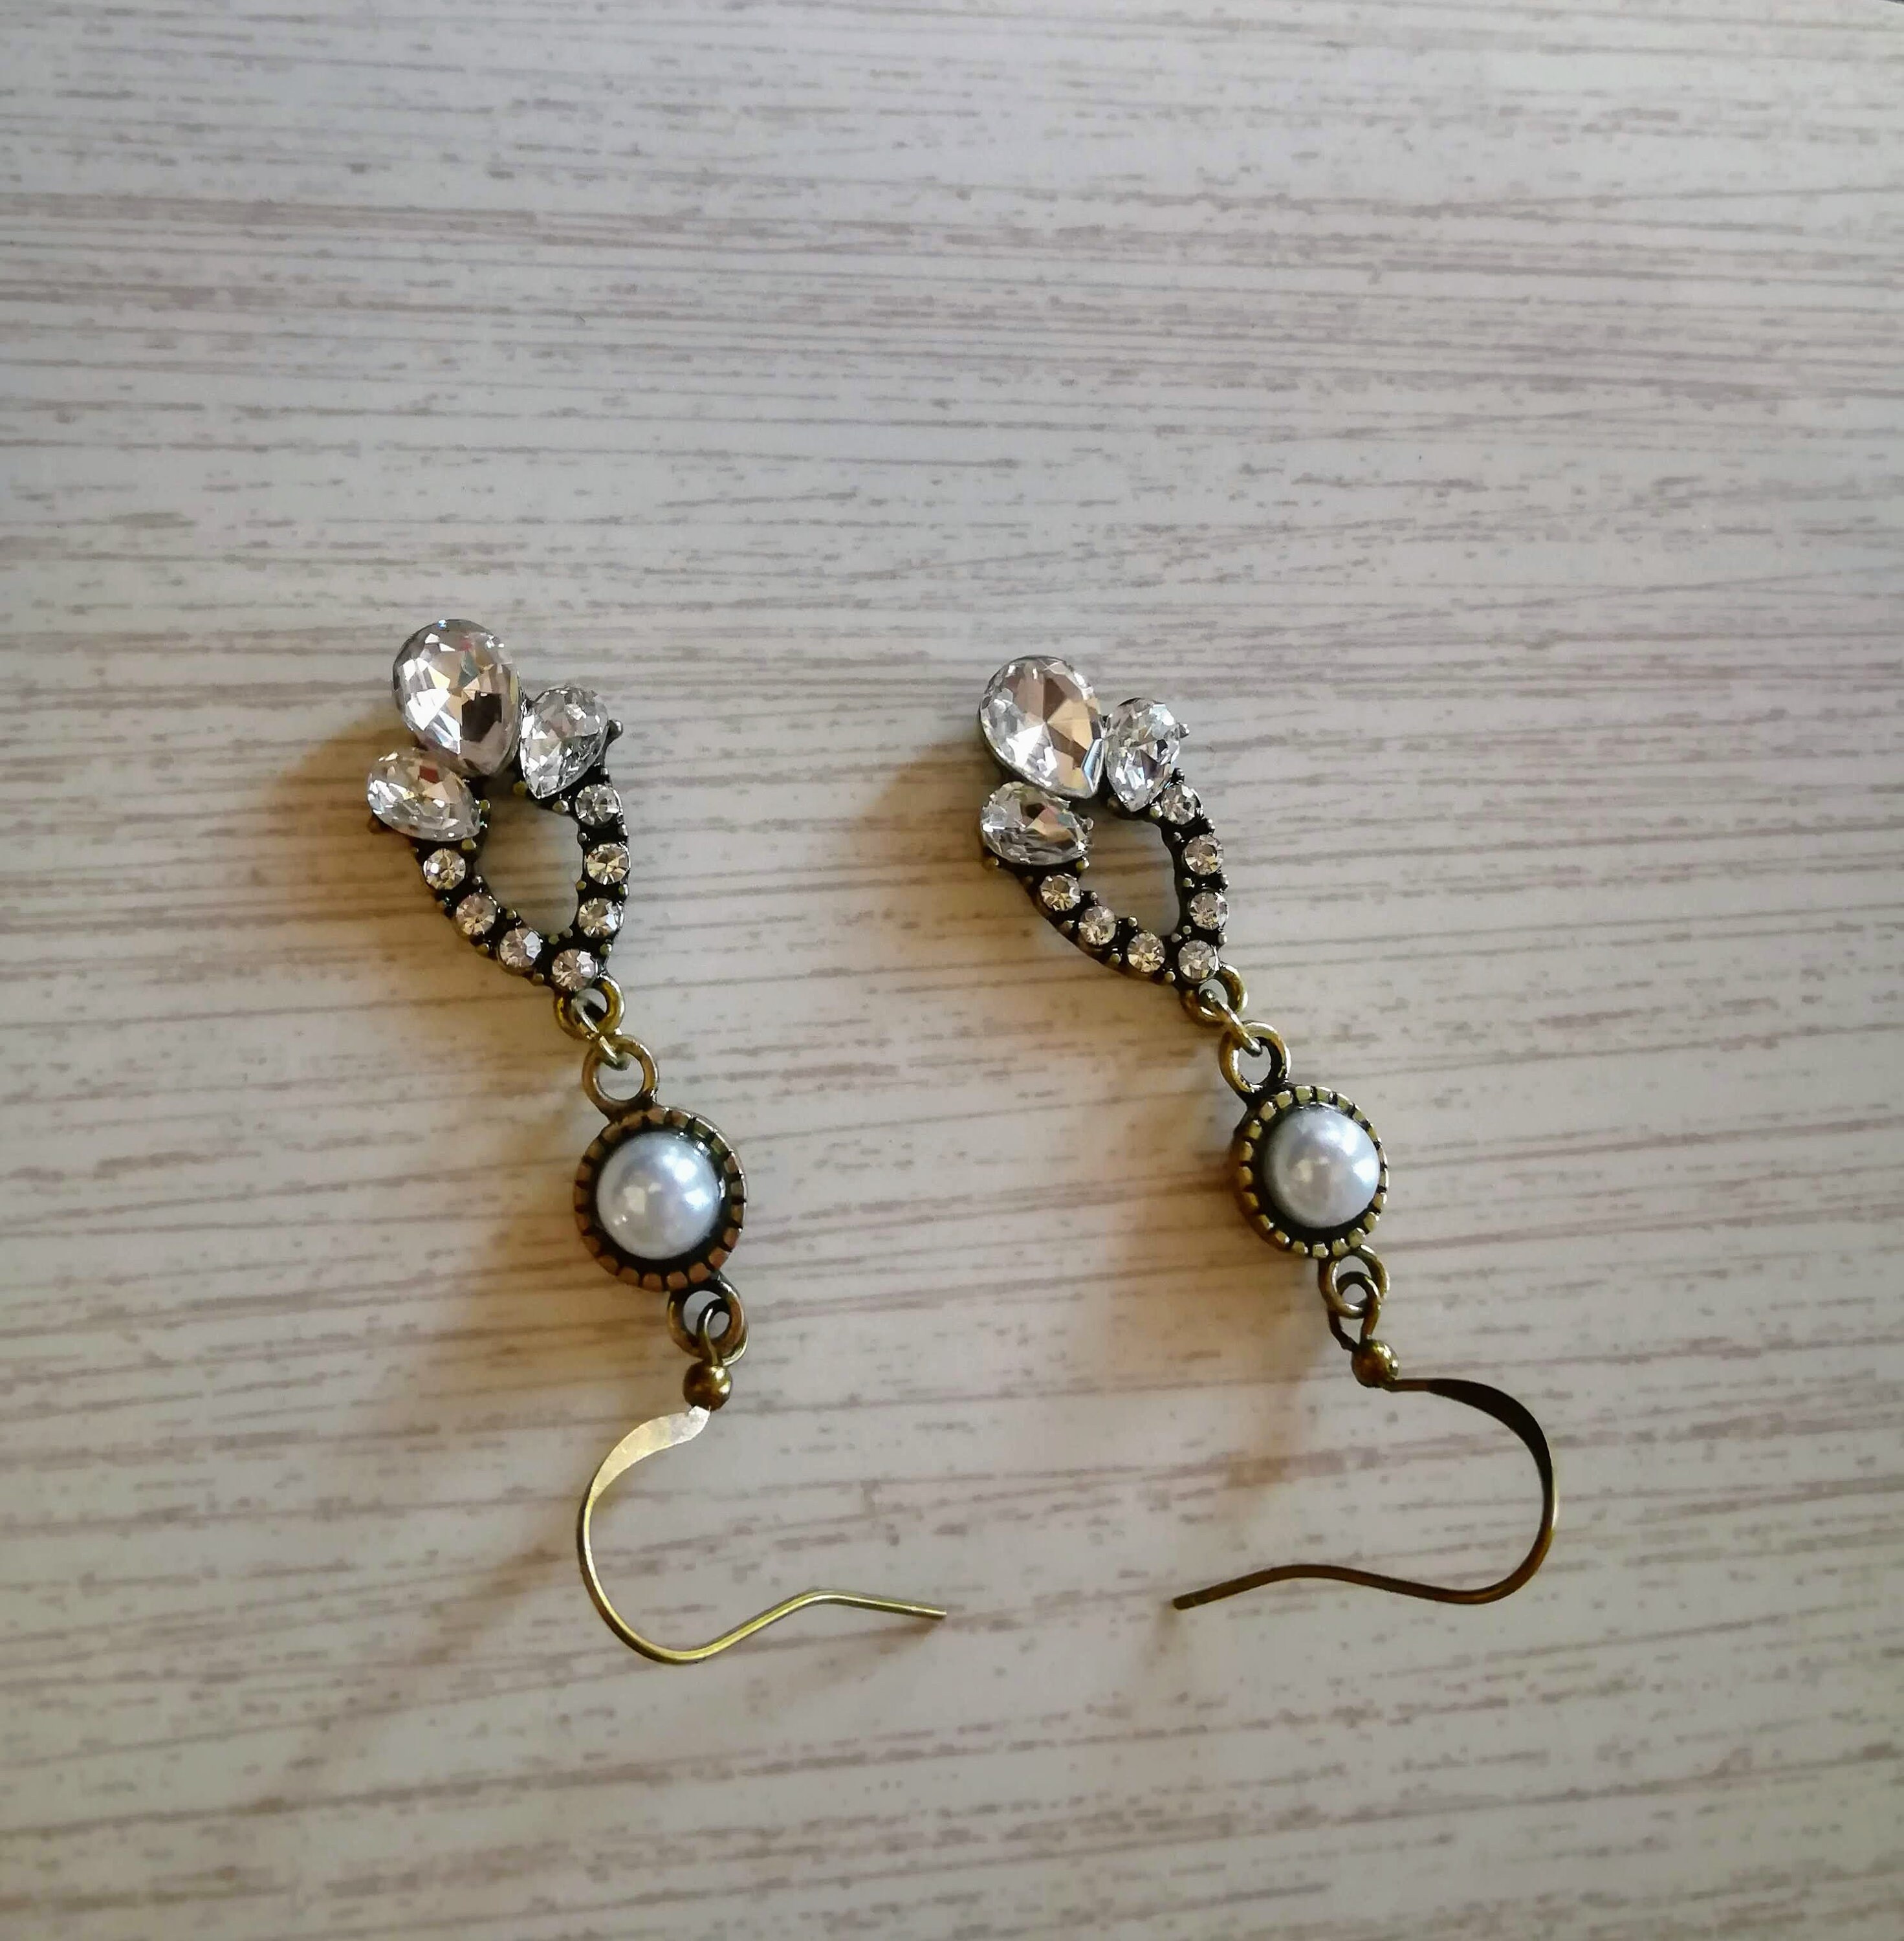 Teardrop Crystal Charm Earrings Vintage Crystal Earrings | Etsy